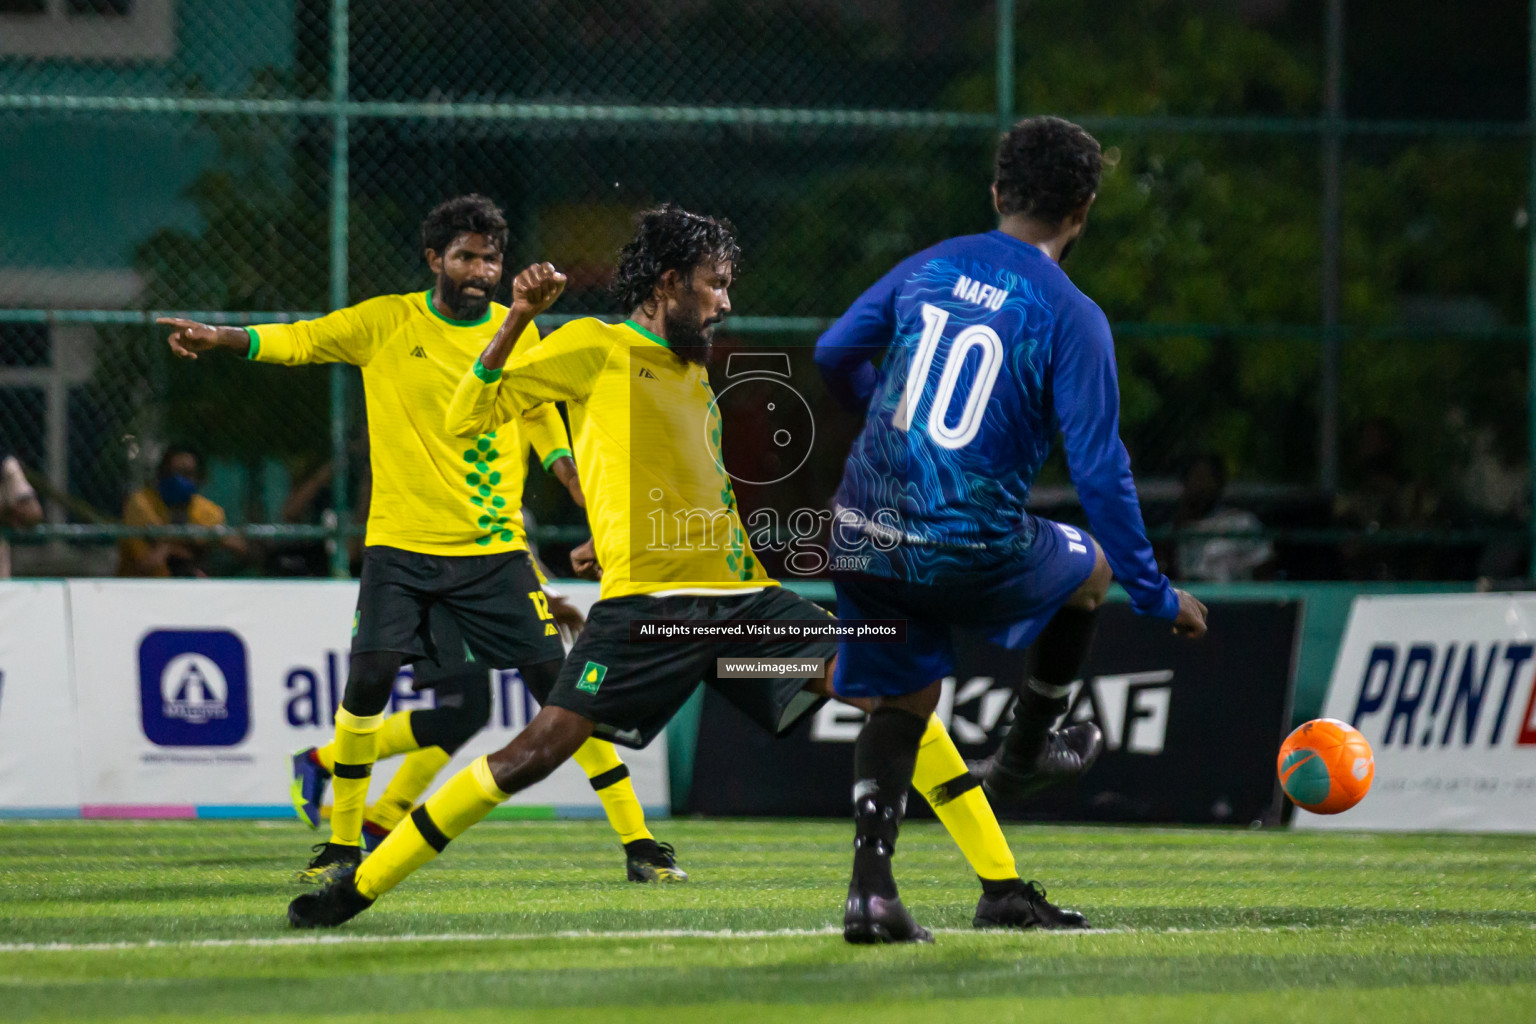 Club Maldives Day 7 - 27th November 2021, at Hulhumale. Photos by Nasam & Simah / Images.mv